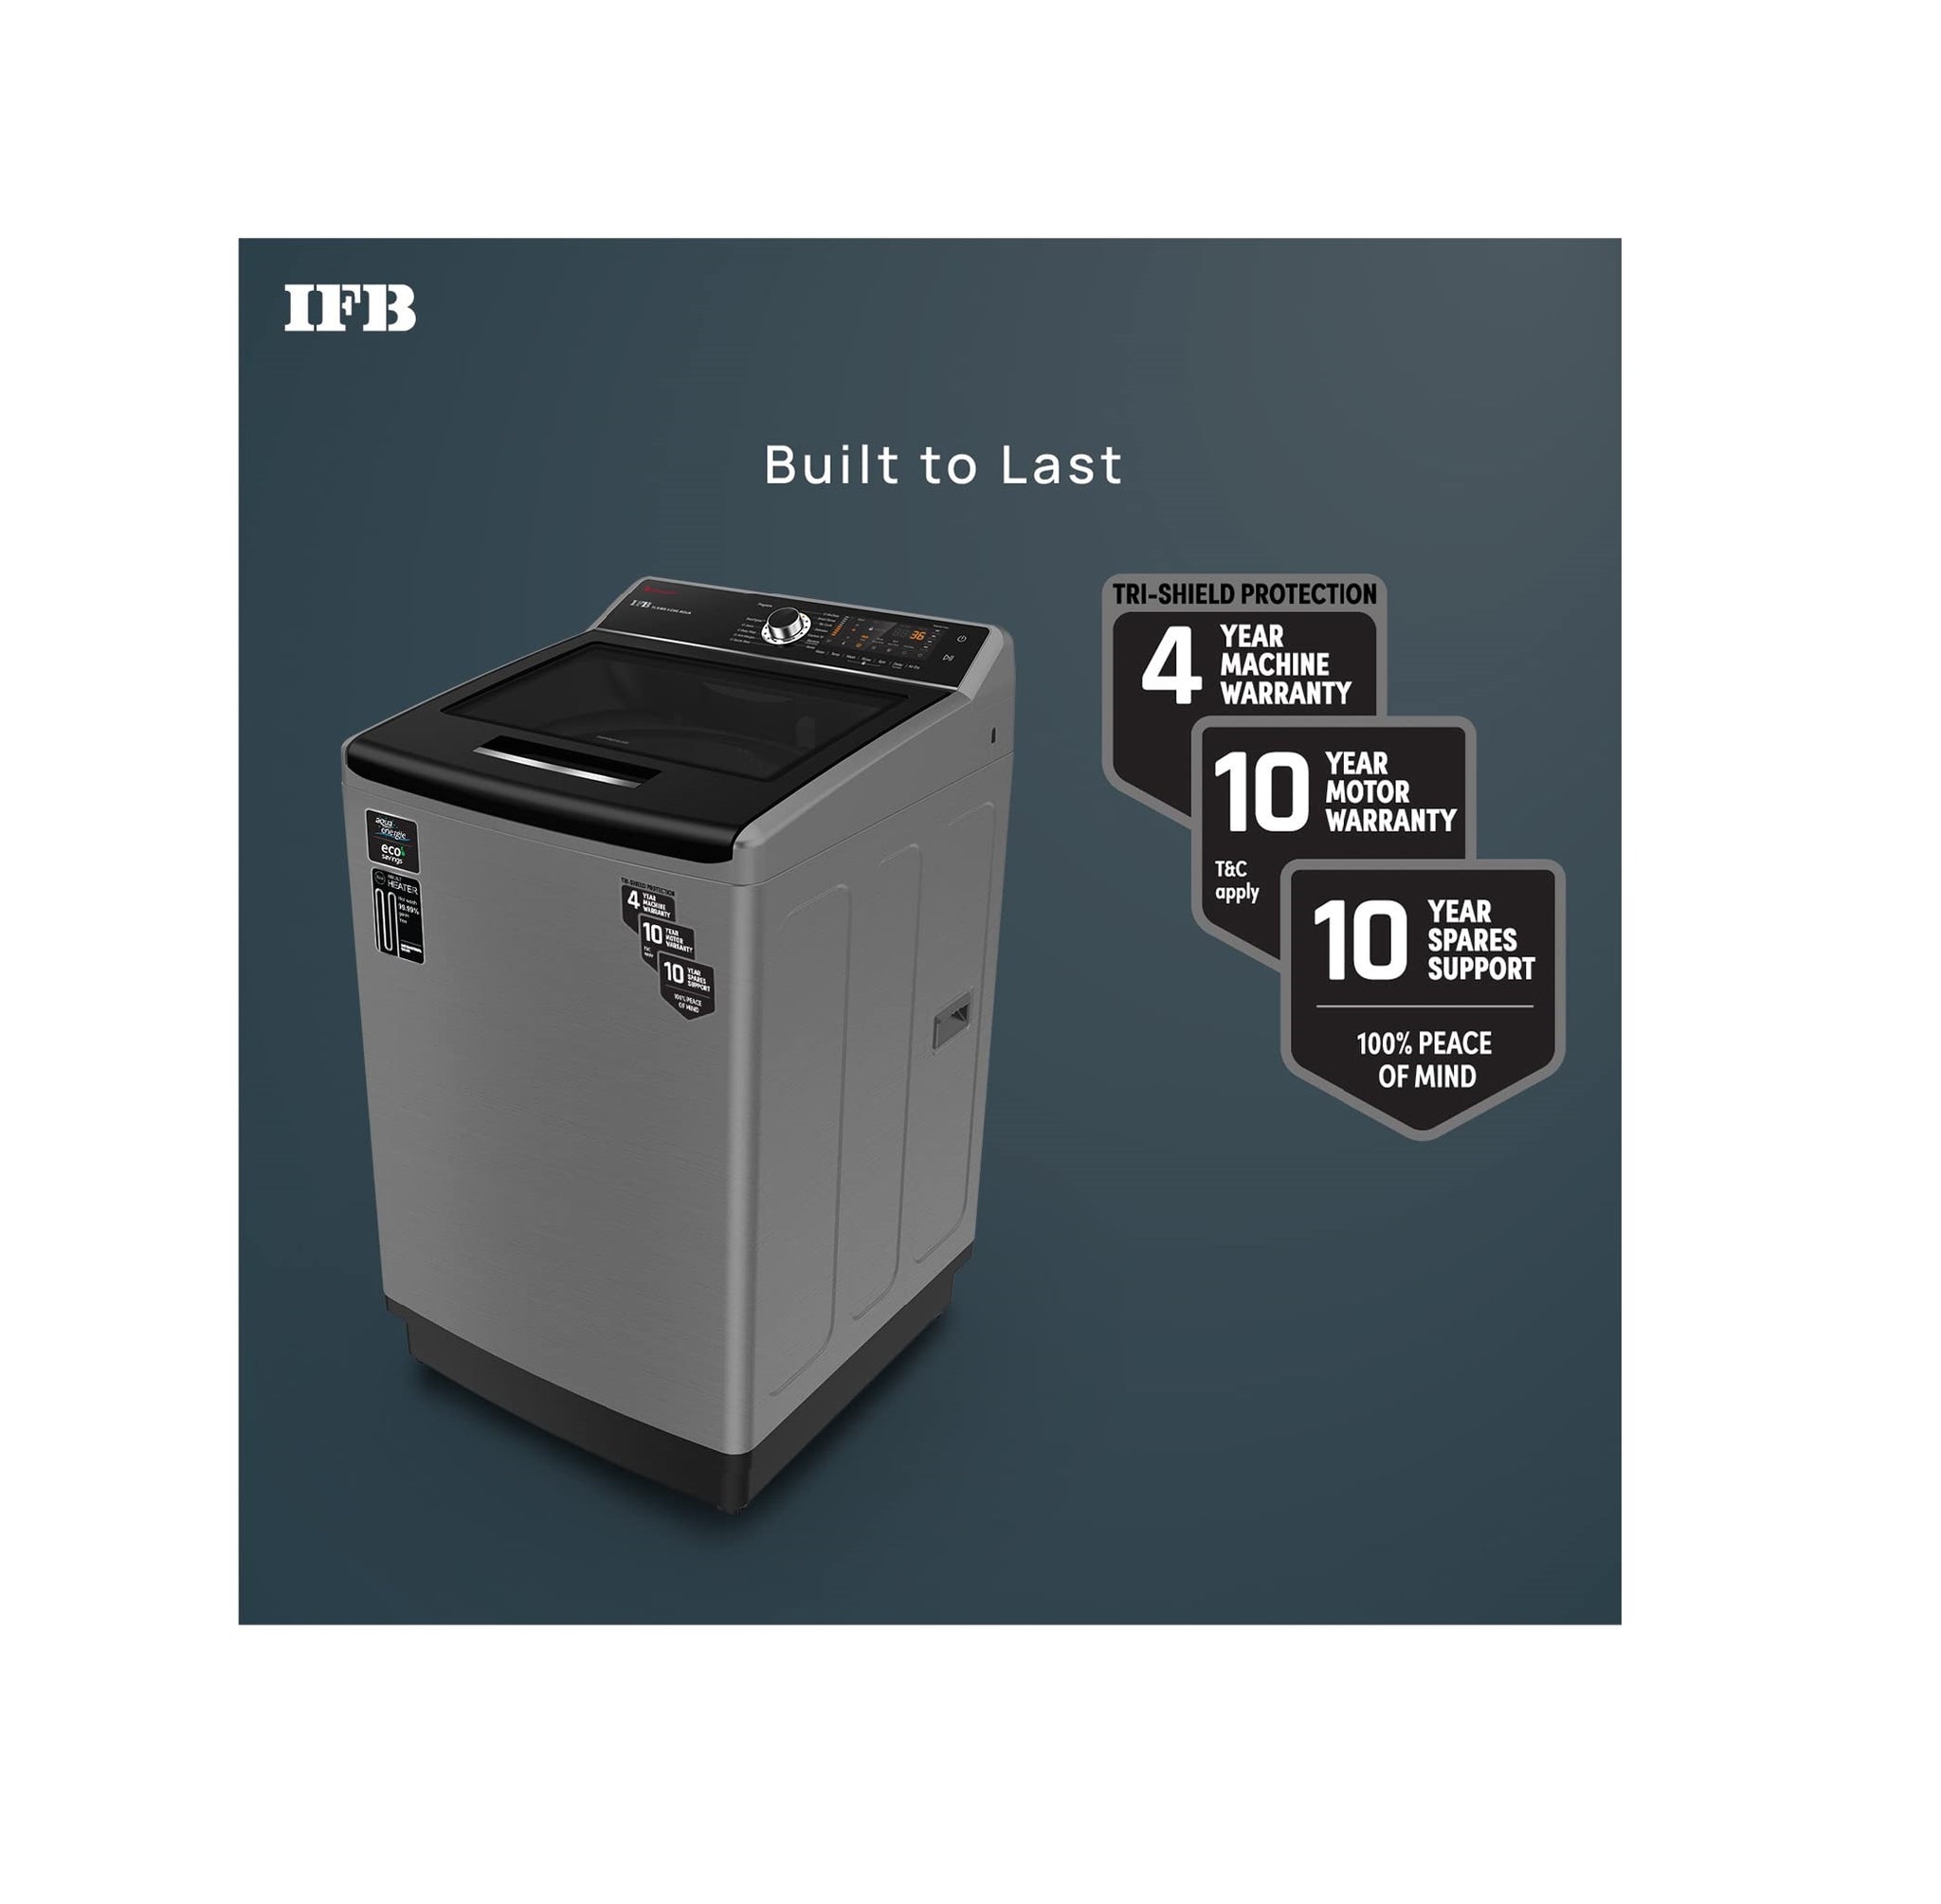 IFB TL-SIBS 10.0 KG Aqua 5 Star Top Load Washing Machine